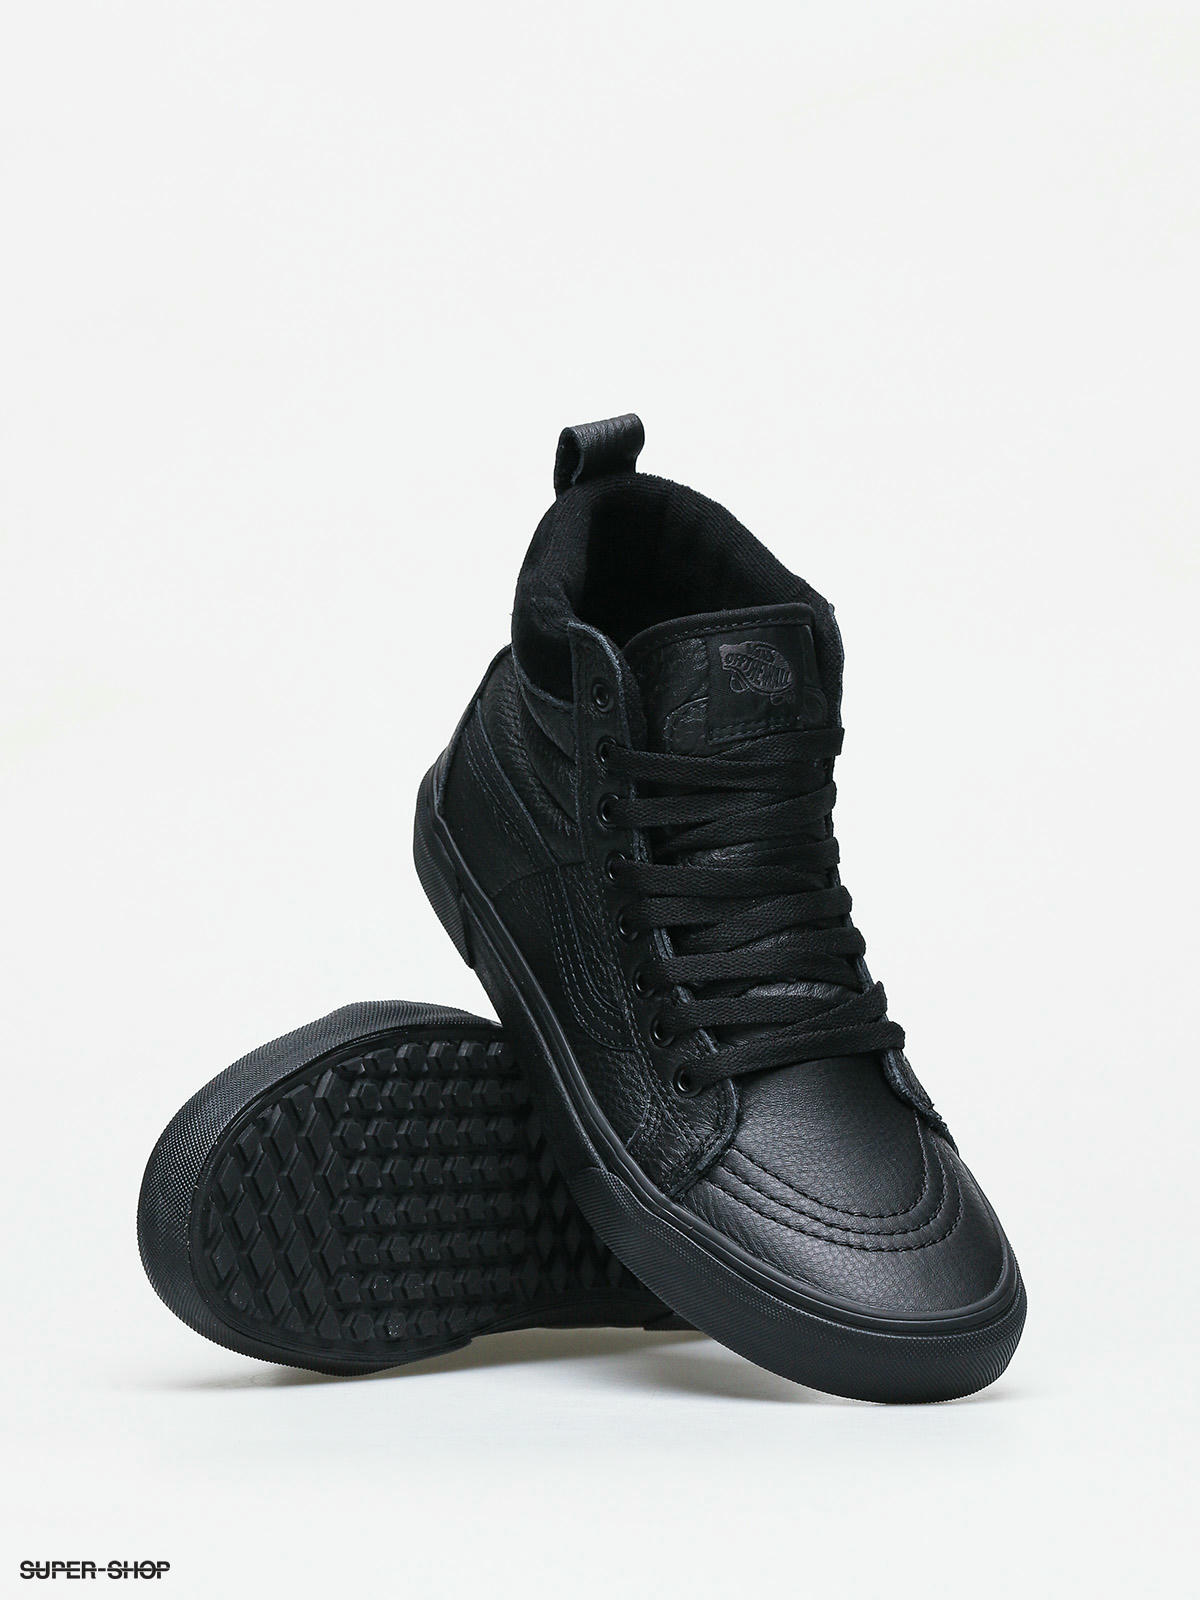 black vans shoes leather